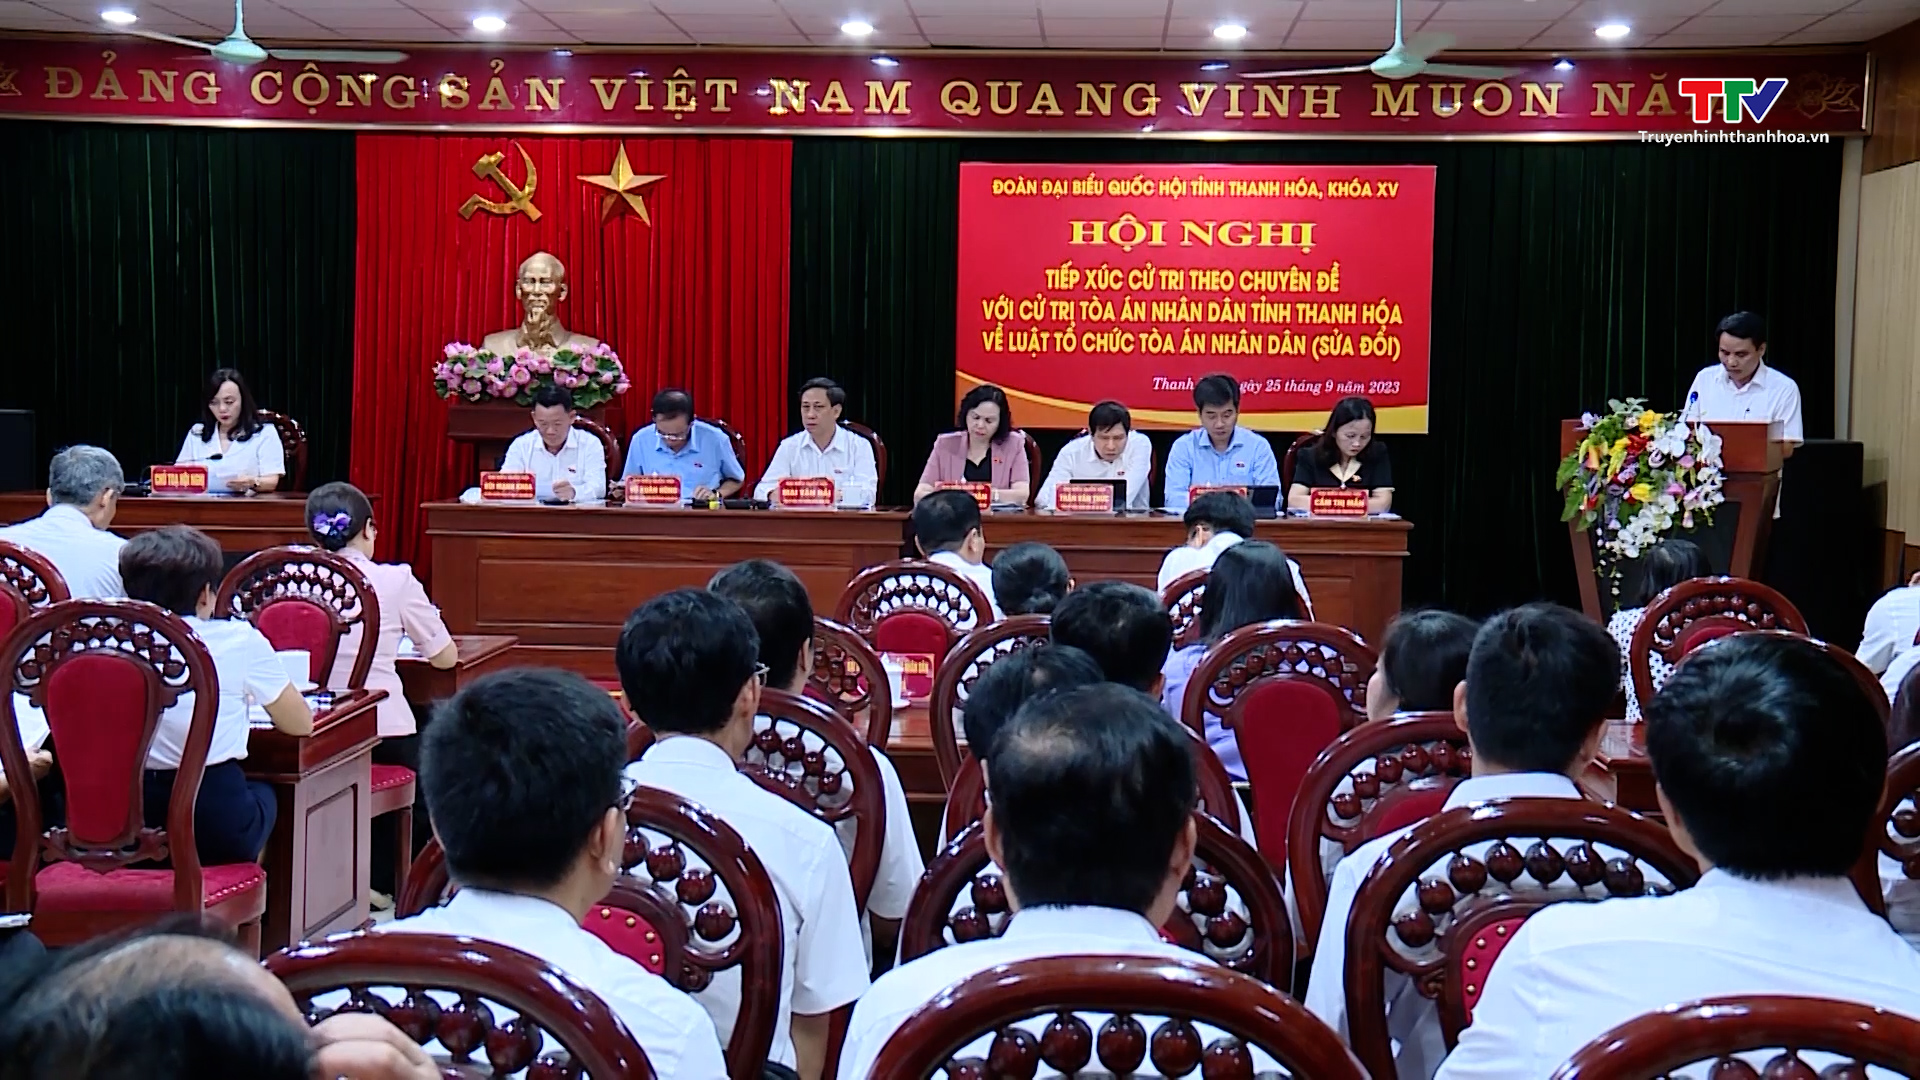 Đoàn Đại biểu Quốc hội tỉnh Thanh Hóa tiếp xúc cử tri theo chuyên đề  - Ảnh 4.